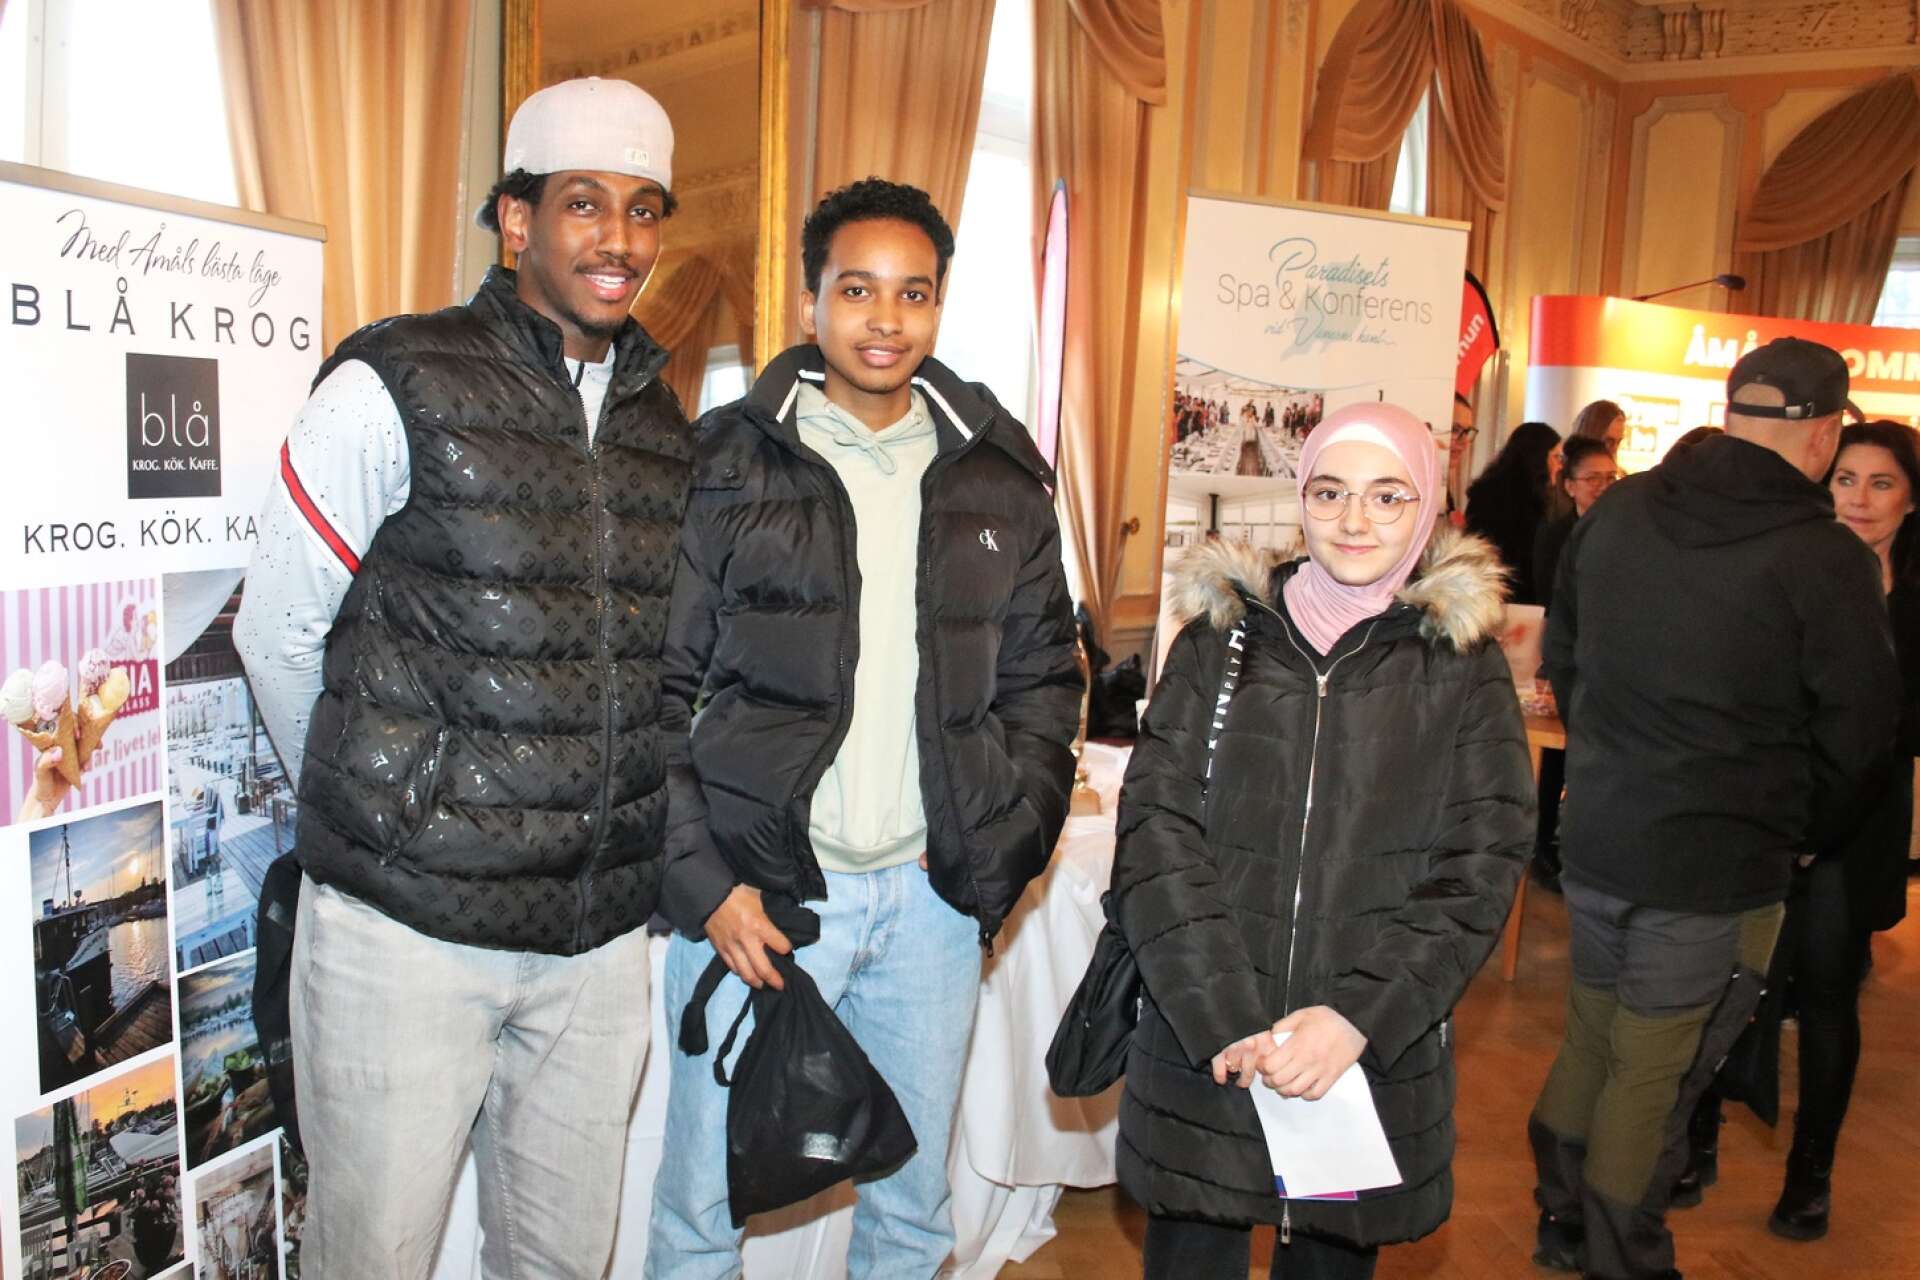 Karlbergseleverna Musab Mowlid Hussien, Yasir Ahmed och Najwa Nana samlade information och fick tips i jobbsökandet.